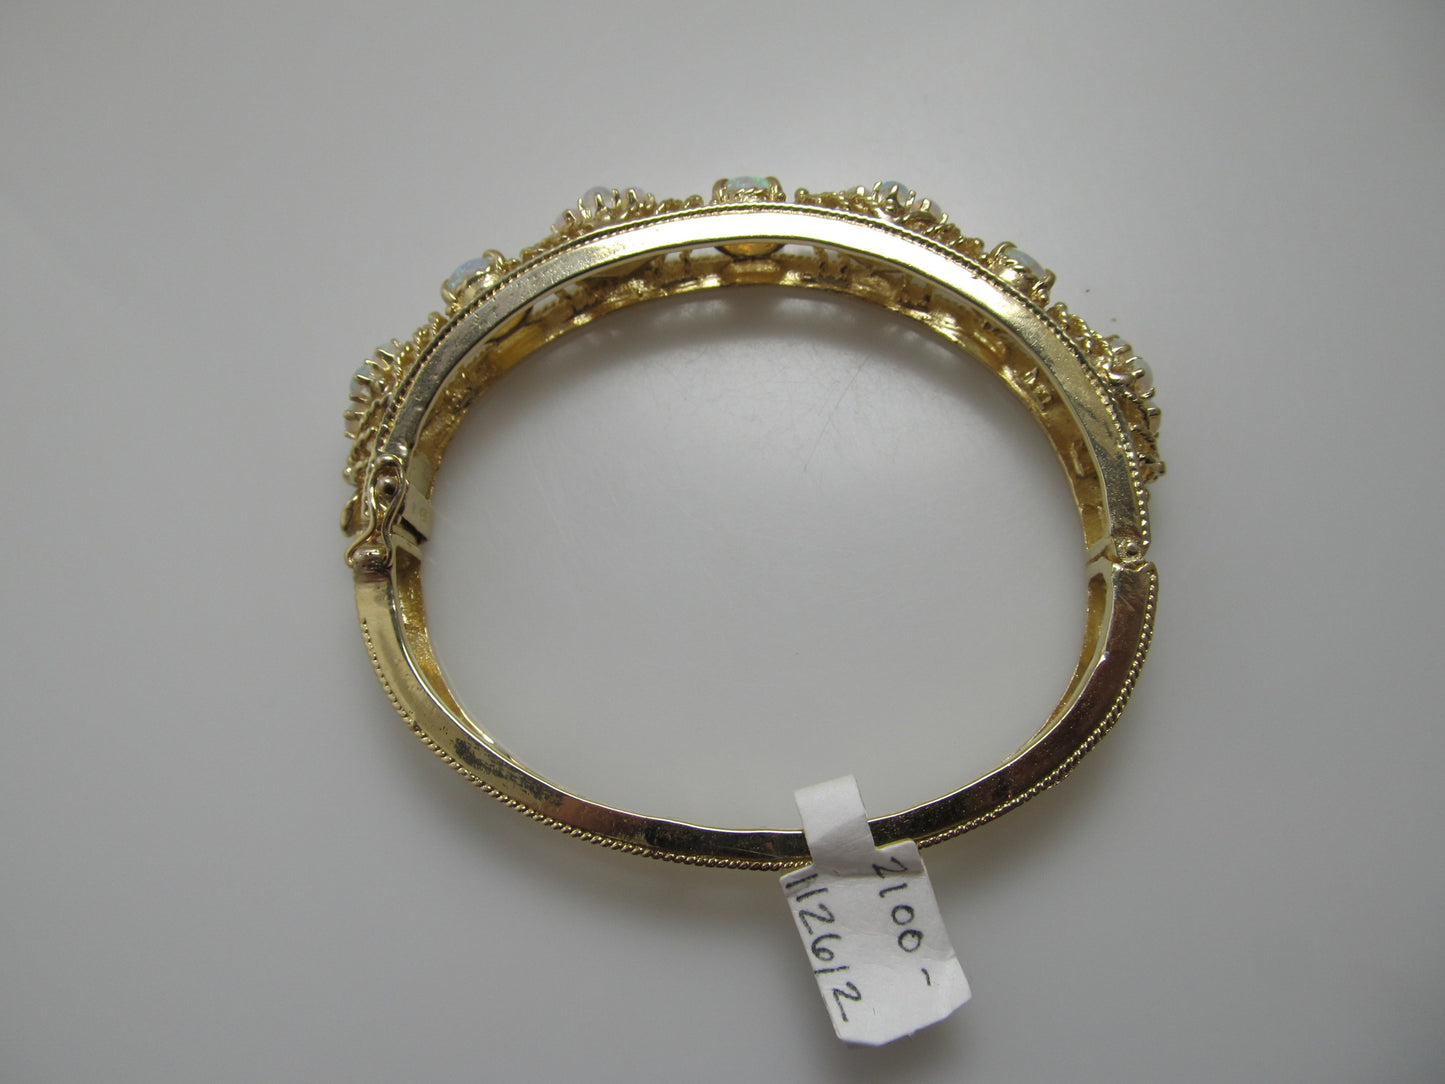 Estate 14k yellow gold 5ct opal bangle bracelet